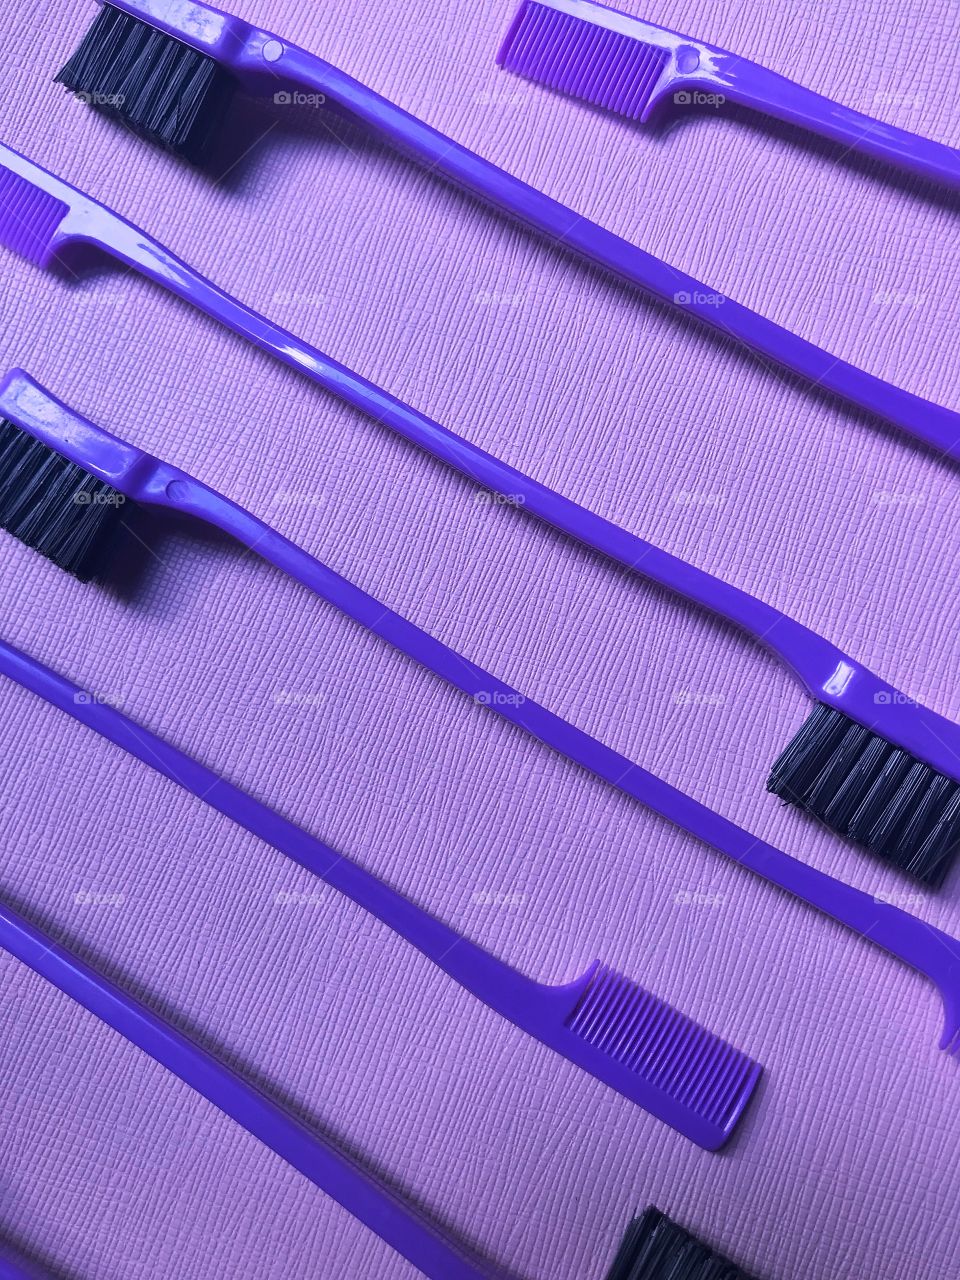 Purple Edge Brushes :) 